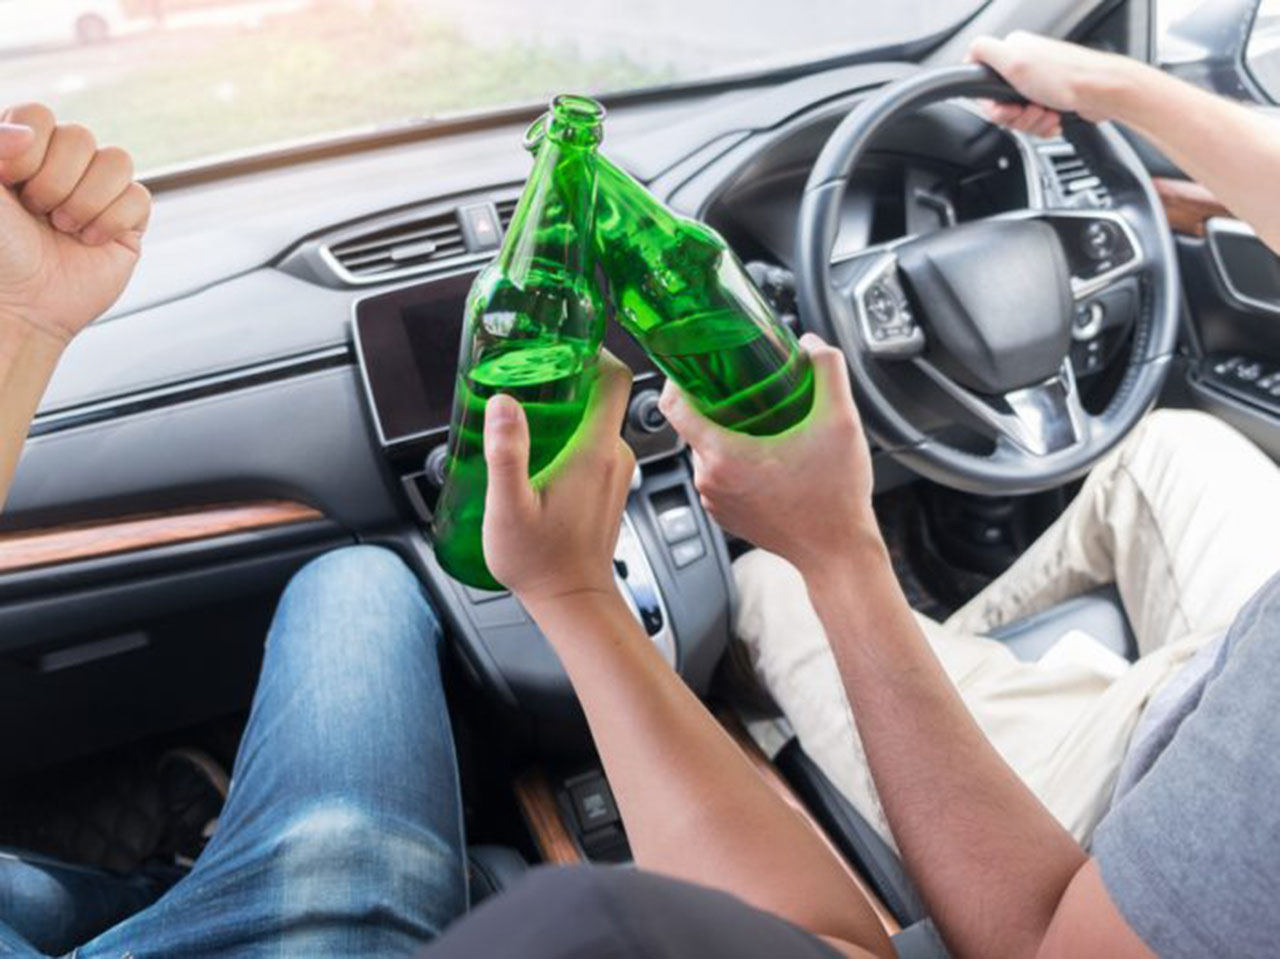 Sử dụng rượu bia khi lái xe tiềm ẩn rất nhiều nguy cơ tai nạn giao thông. Càng nguy hiểm hơn khi các tài xế say xỉn này còn đang ở độ tuổi teen - Ảnh minh họa lowcostinterlock